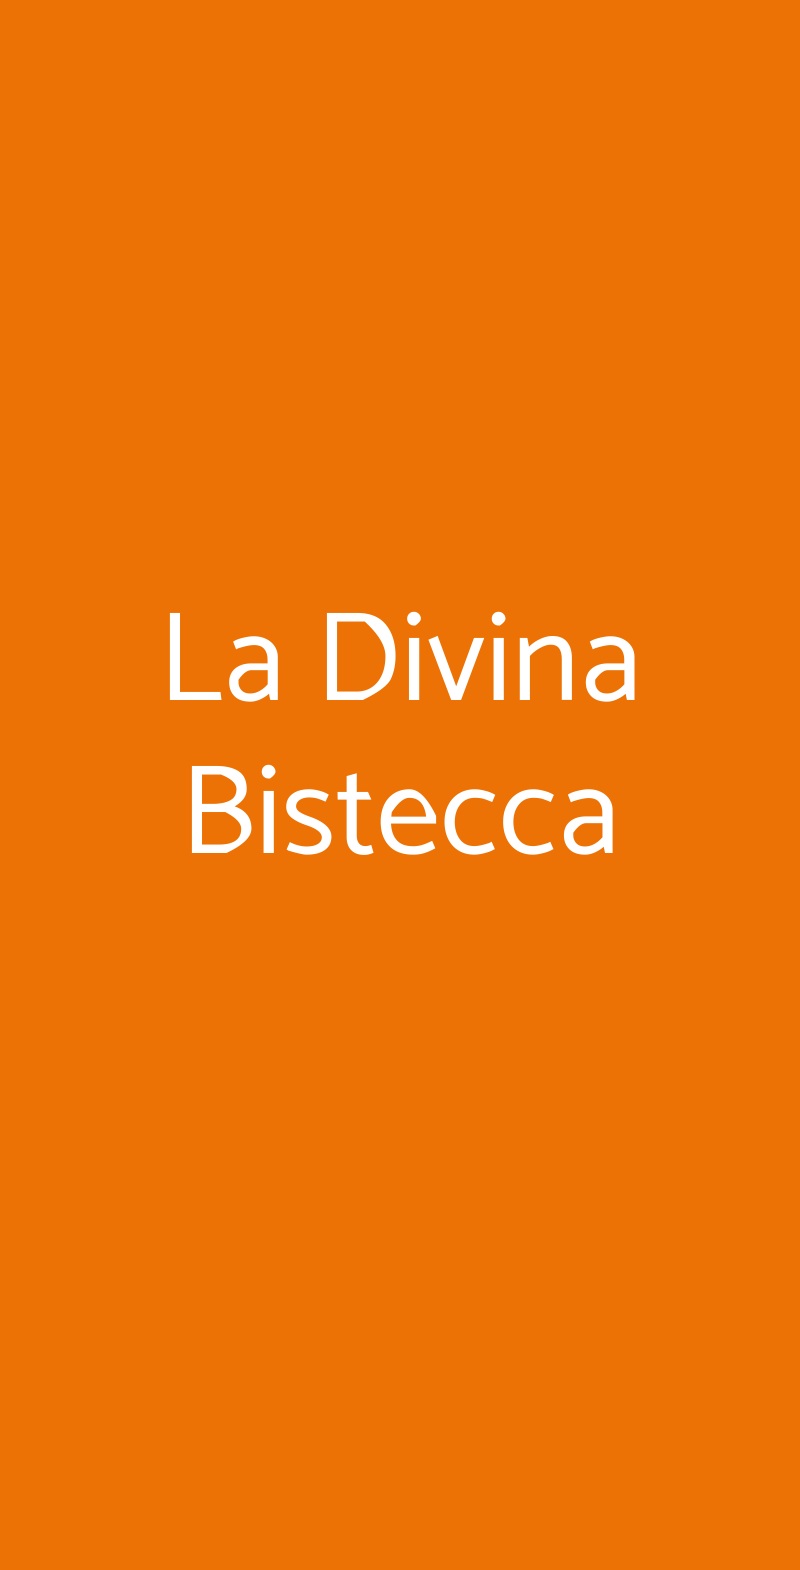 La Divina Bistecca Rimini menù 1 pagina